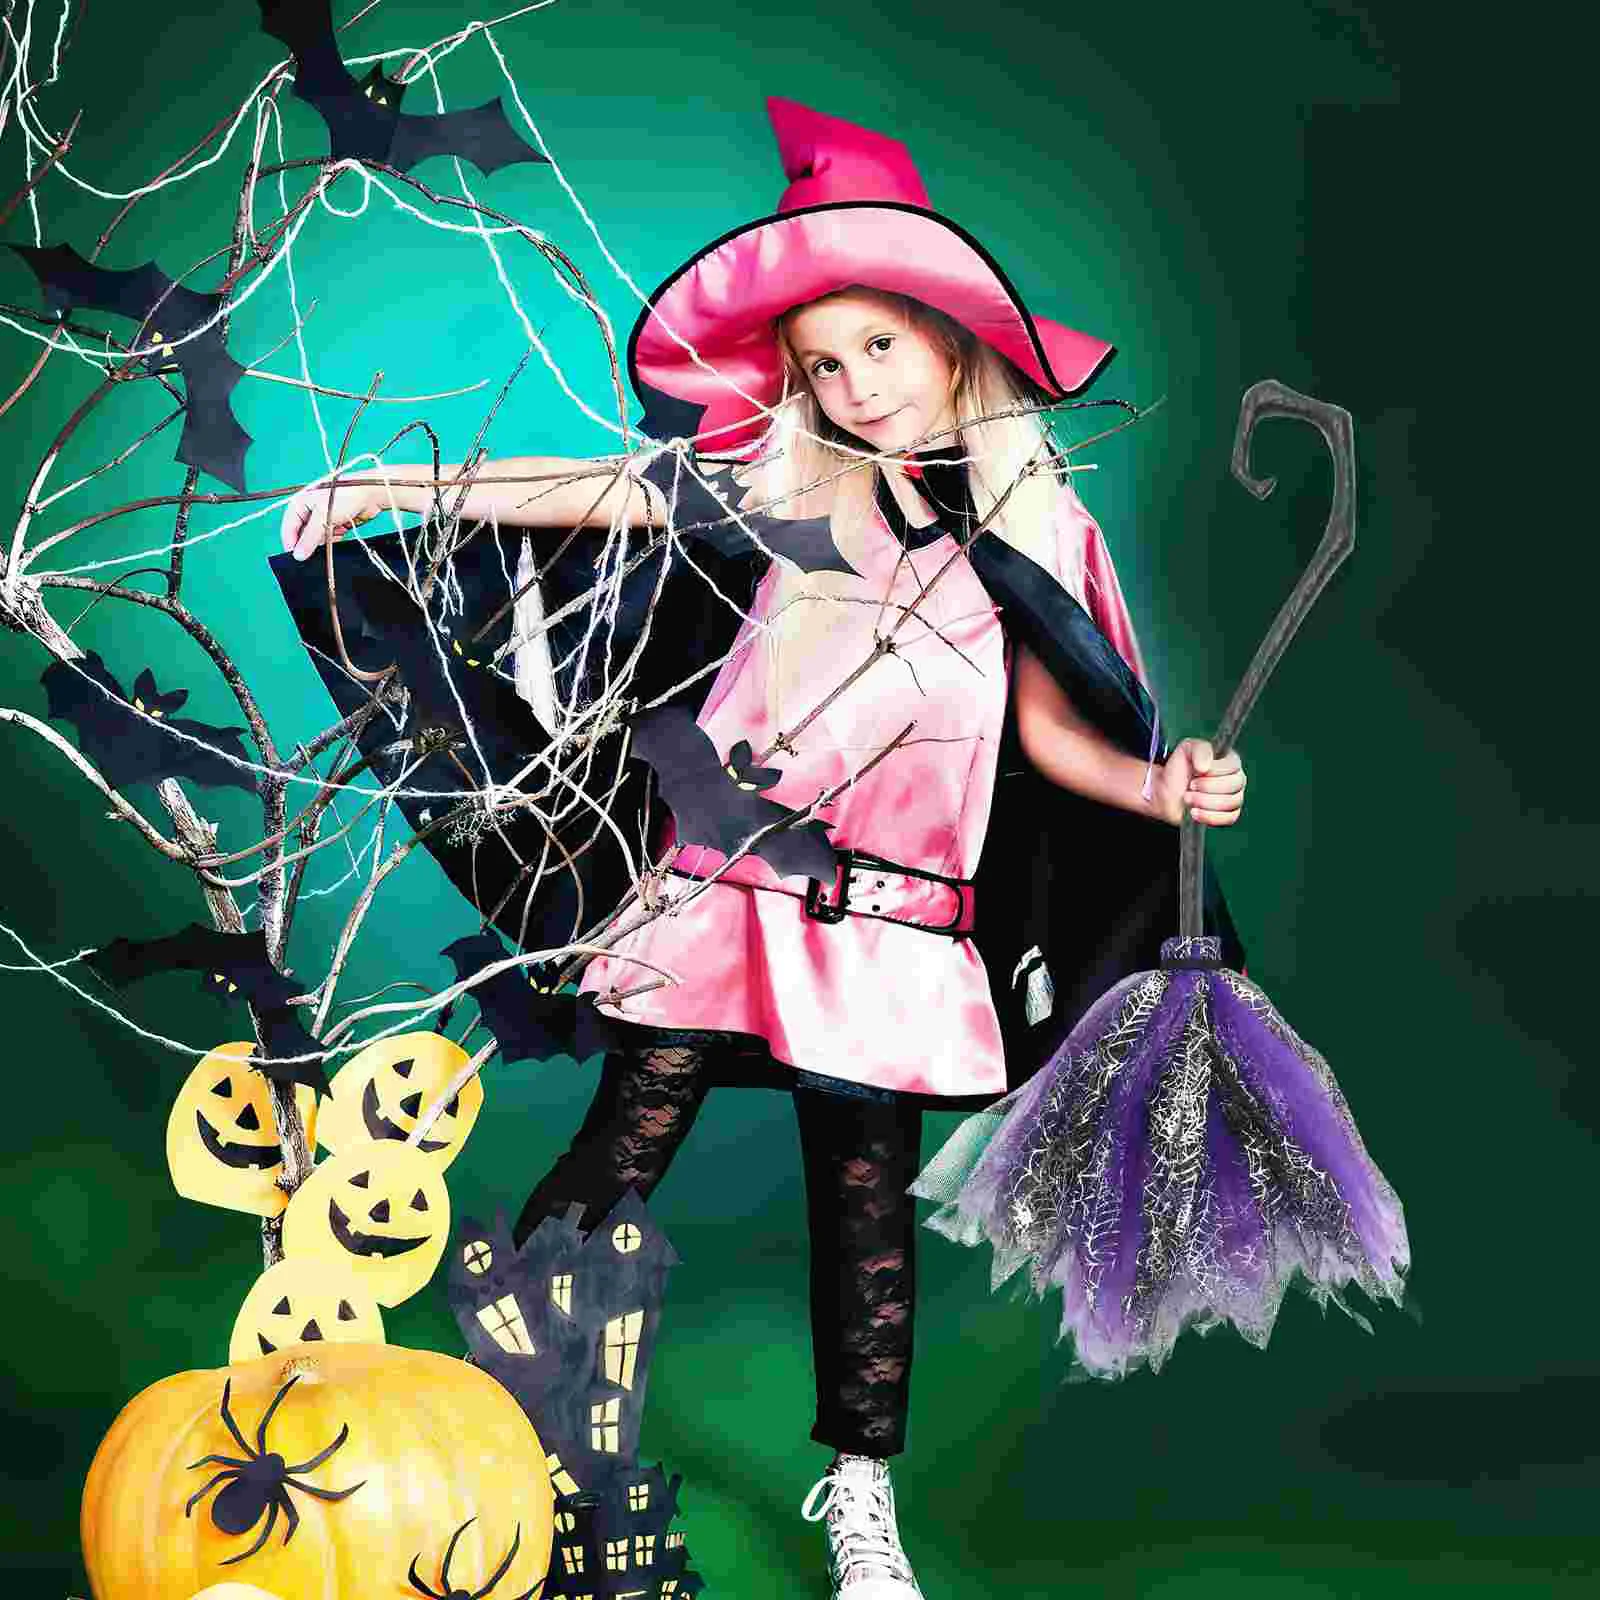 

Съемная метла ведьмы Хэллоуин ведьма метла пластиковая ведьма метла реквизит для детской